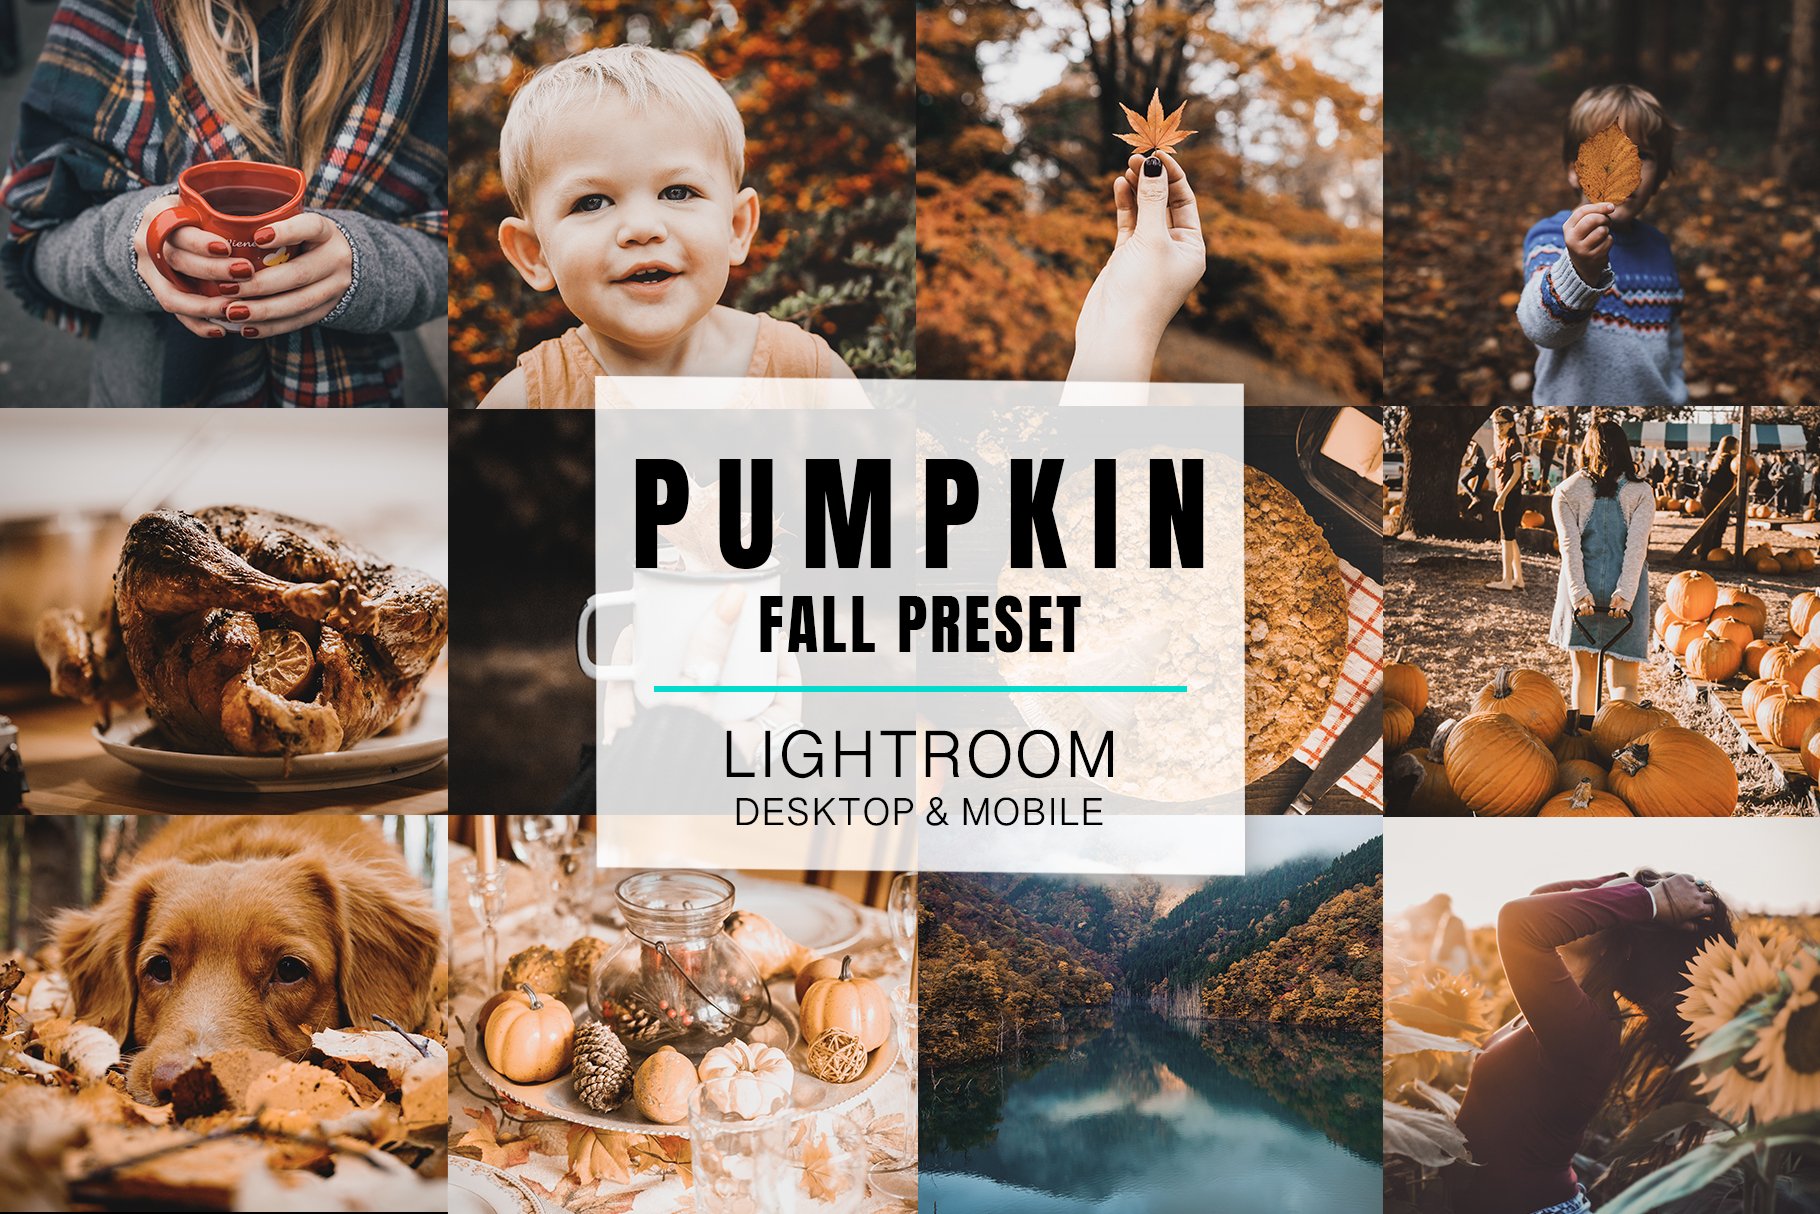 Lightroom Mobile - Pumpkincover image.